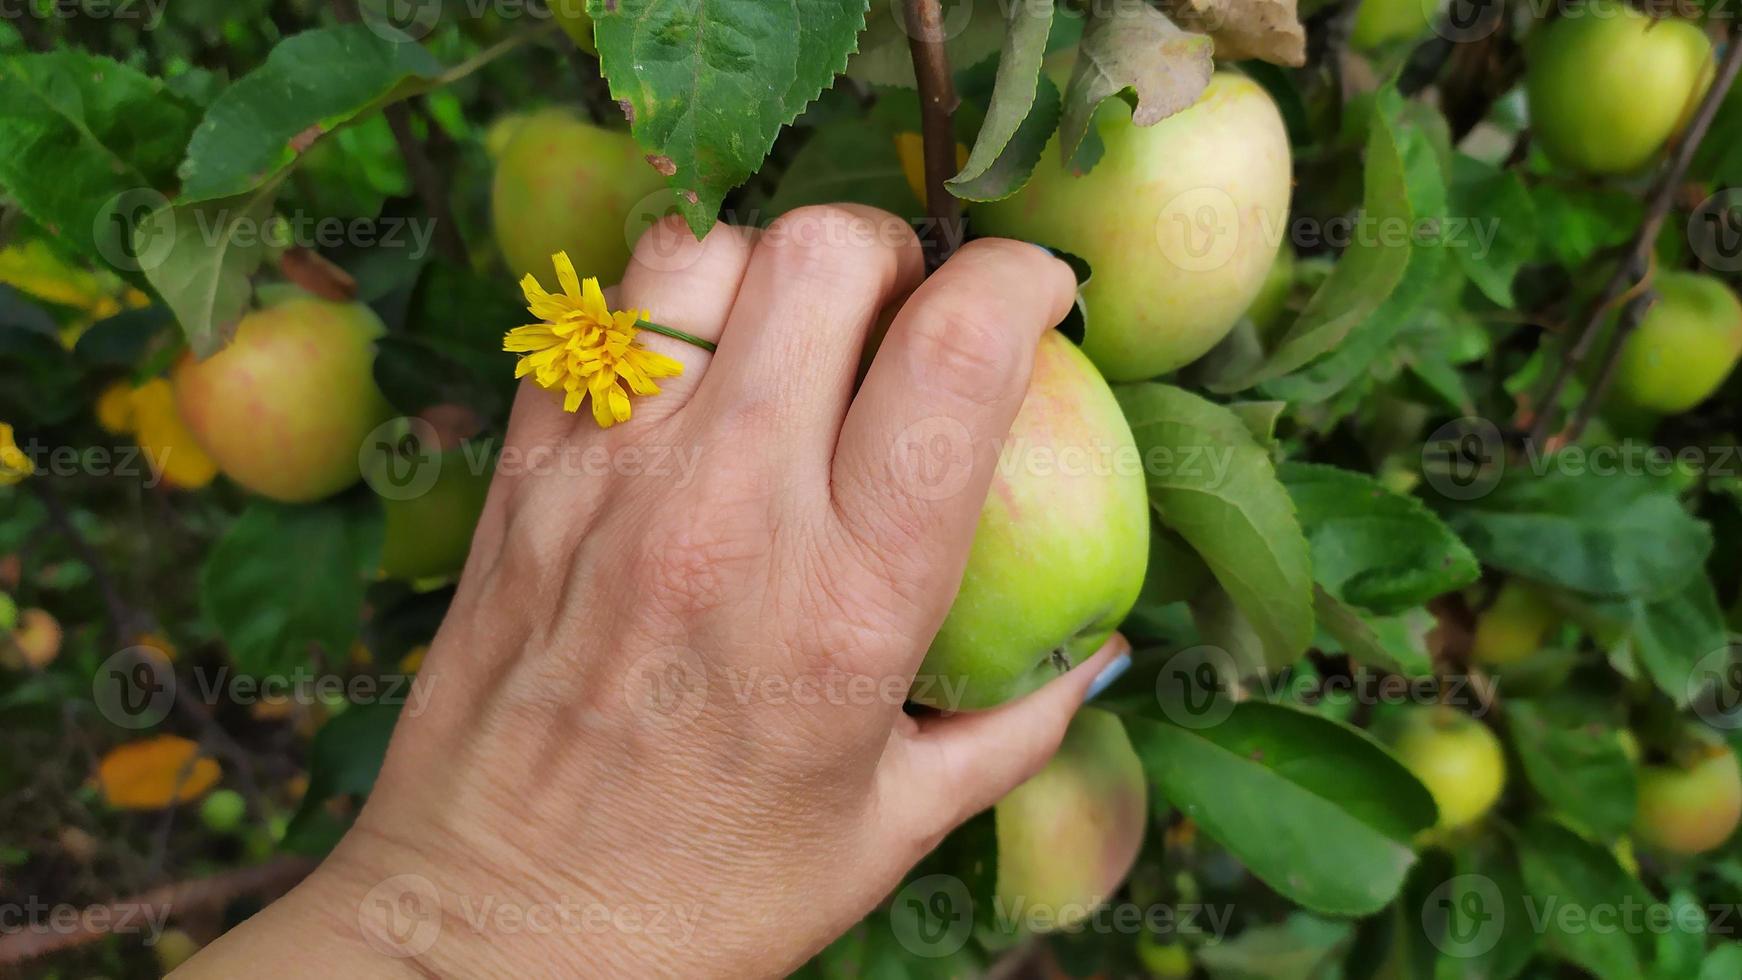 de hand van een vrouw plukt een appel van een appelboom. appels oogsten in de herfst. foto